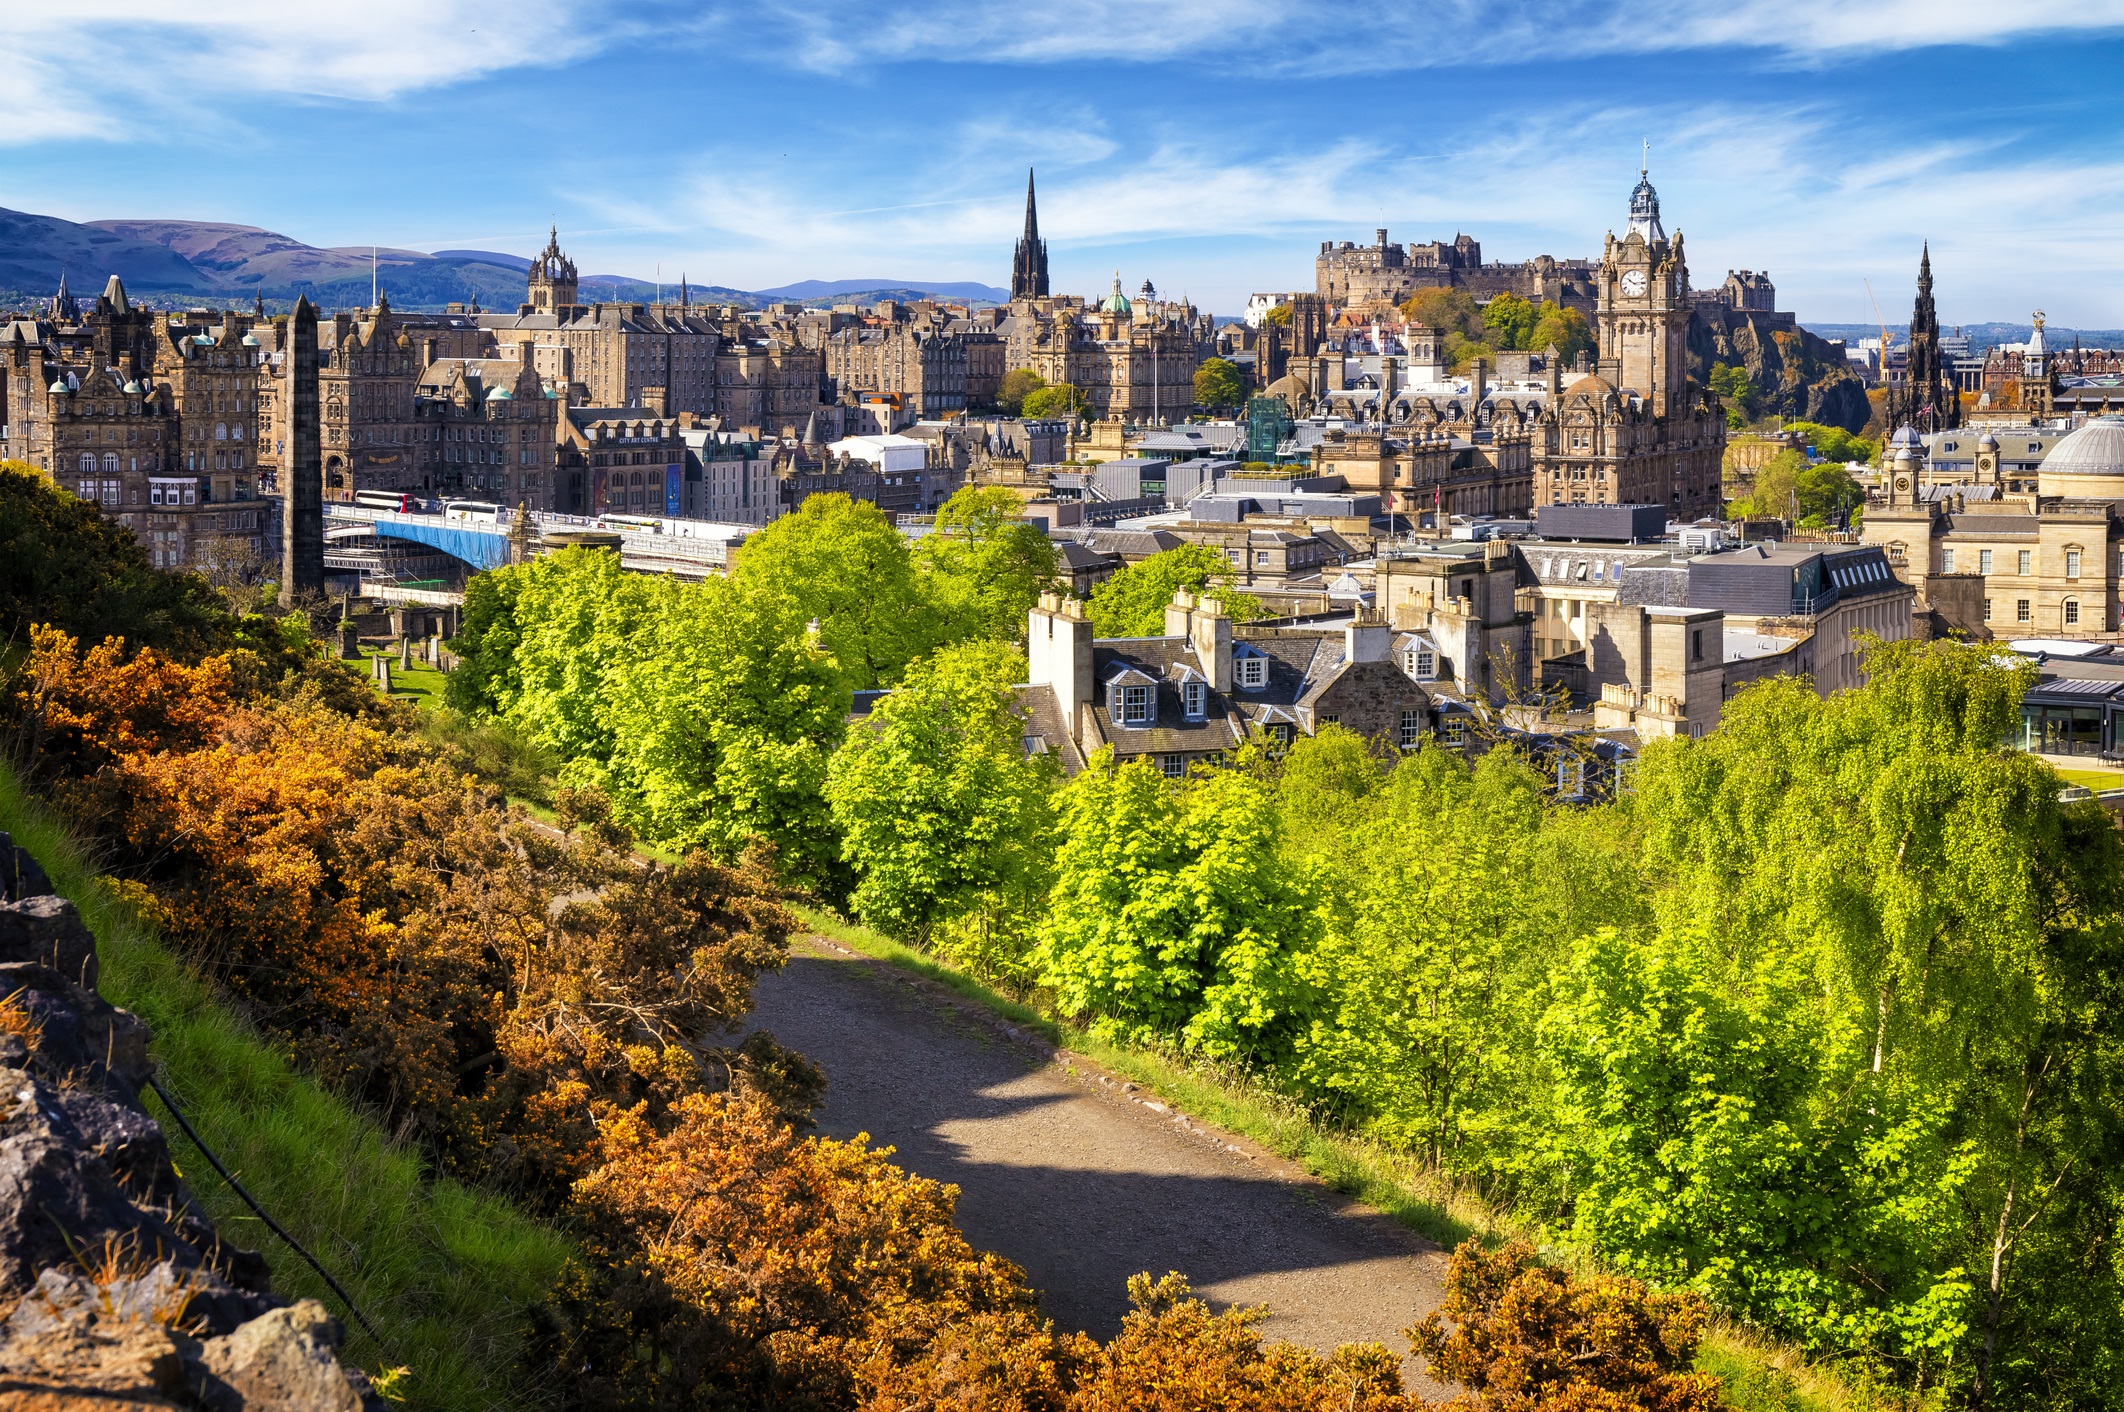 <p><strong>Единбург, Шотландия</strong></p>

<p>Единбург дава сериозна заявка за най-красивия град във Великобритания. Дом на най-големия ежегоден фестивал на изкуствата в света, градът разполага със сериозна колекция от викториански улици, очарователни кръчми и пазари, забележителна архитектура и не на последно място емблематичният замък Единбург.</p>